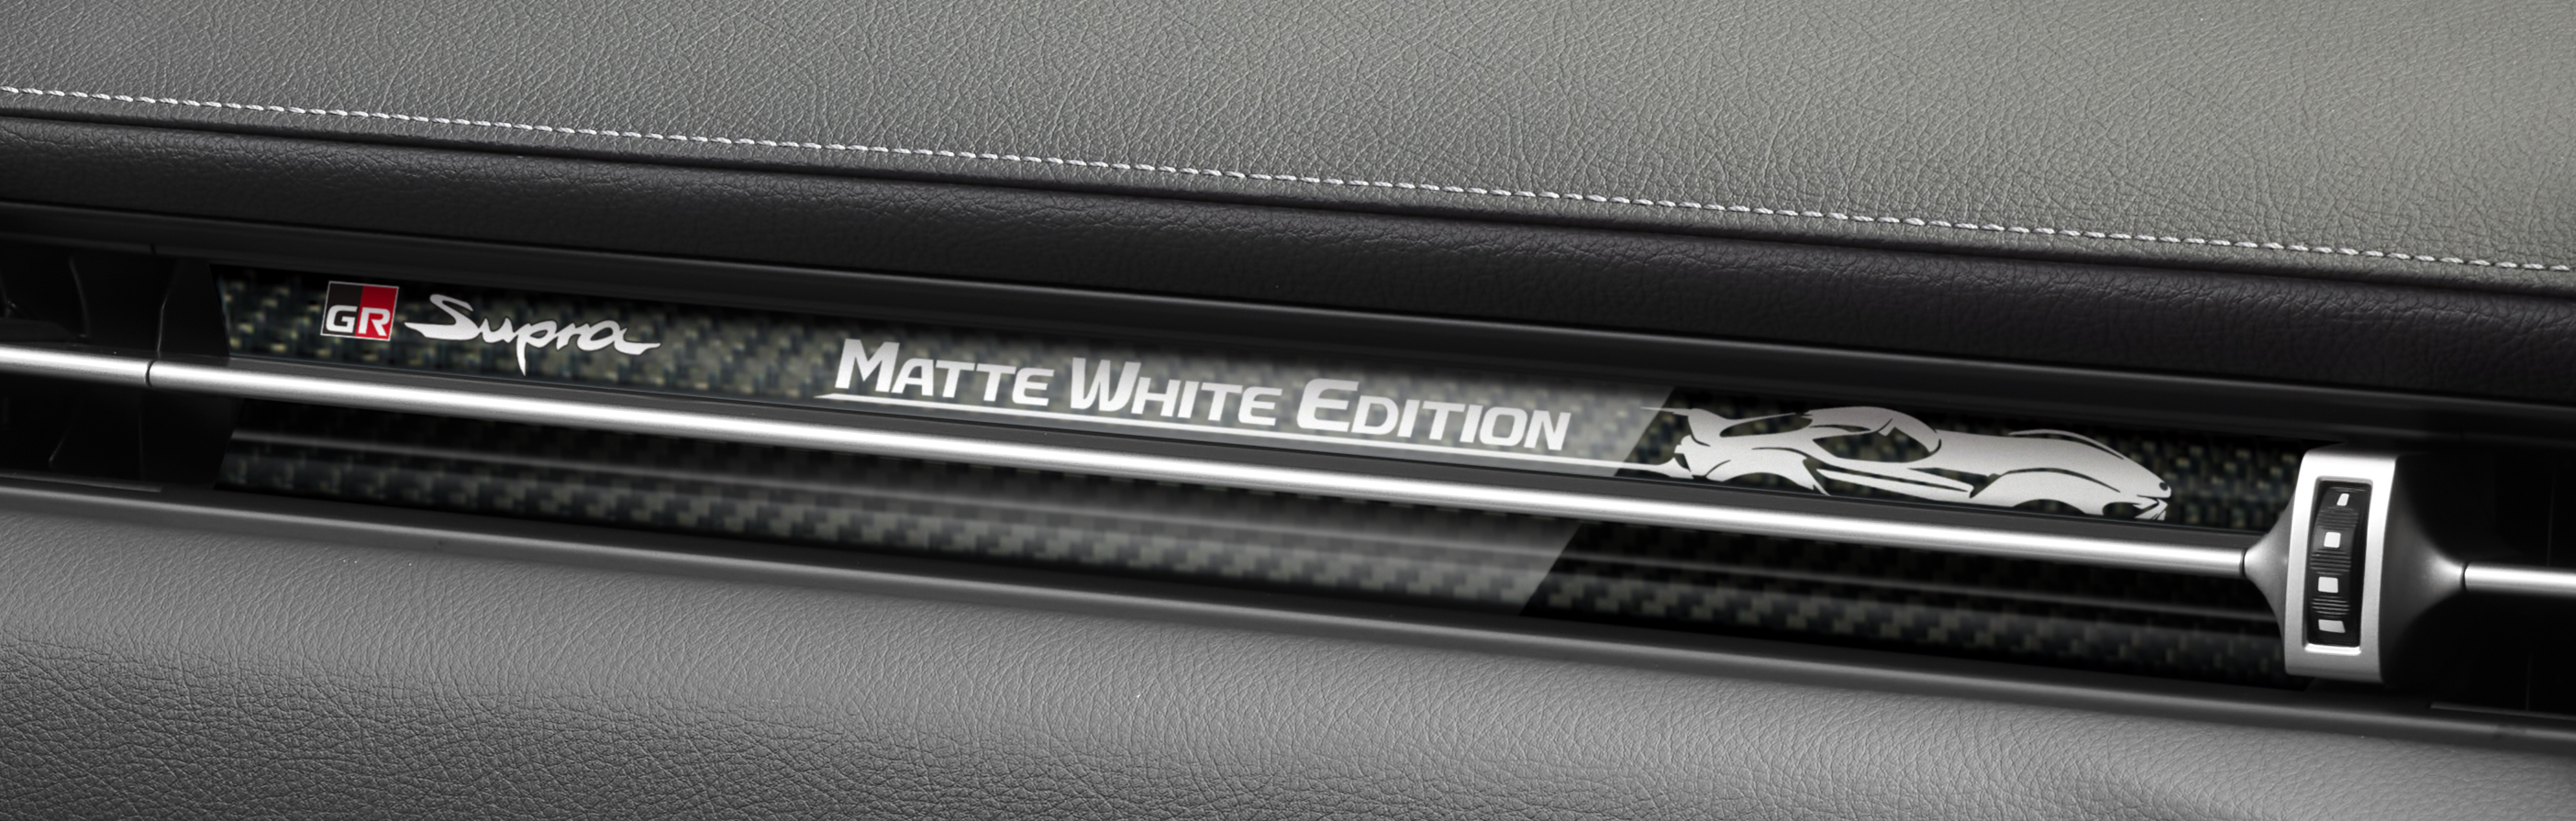 スープラ、マットホワイトカラーの50台限定モデルを設定 | 2022年 